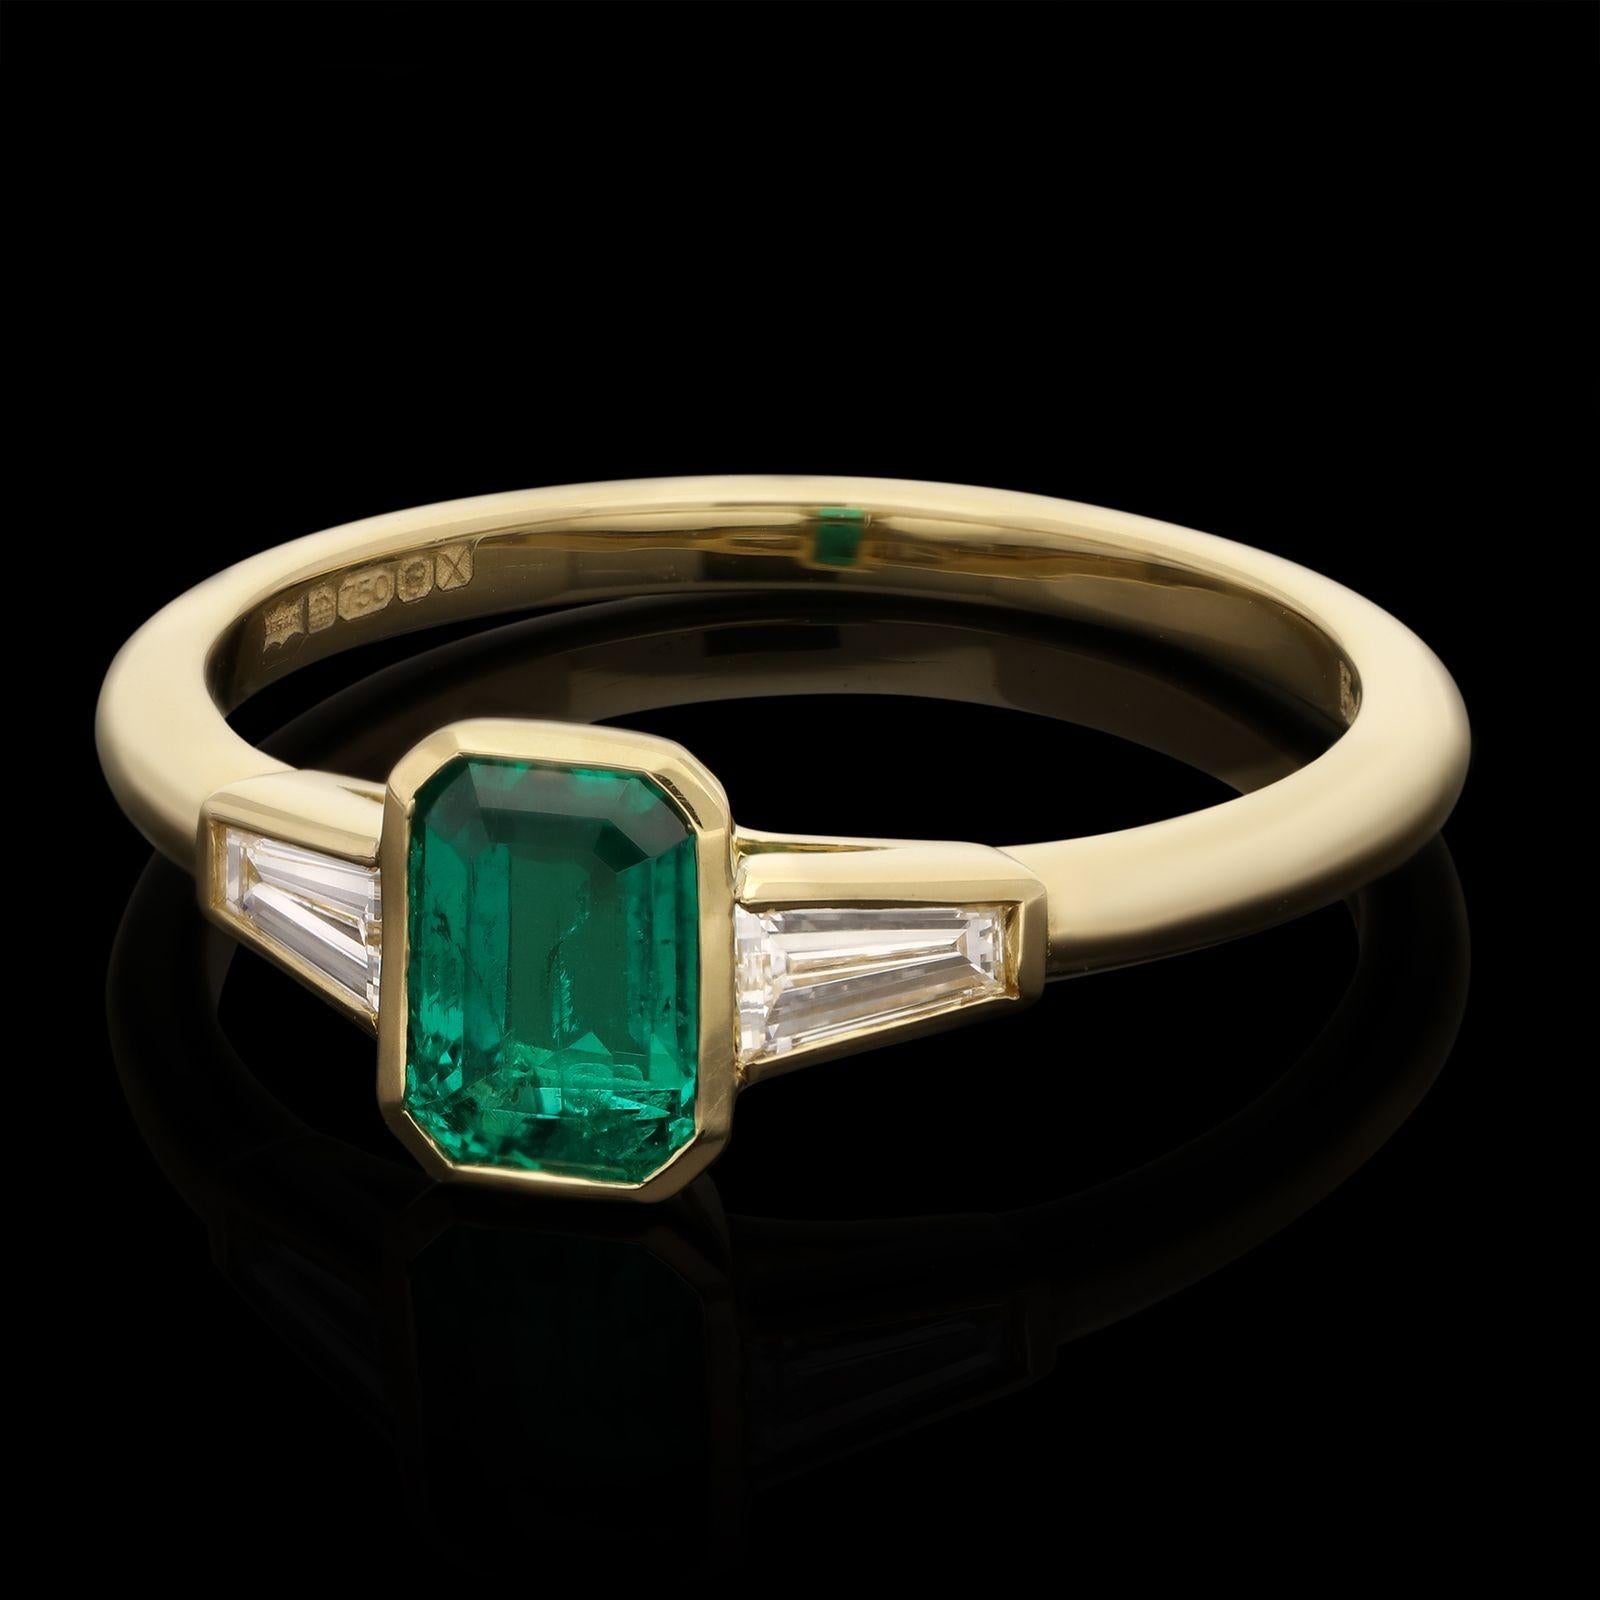 Ein wunderschöner Smaragd- und Diamantring von Hancocks, in dessen Mittelpunkt ein reizvoller, reicher und tief gesättigter Smaragd kolumbianischen Ursprungs mit einem Gewicht von 0,68 ct. steht, der in Gelbgold zwischen eleganten, sich verjüngenden